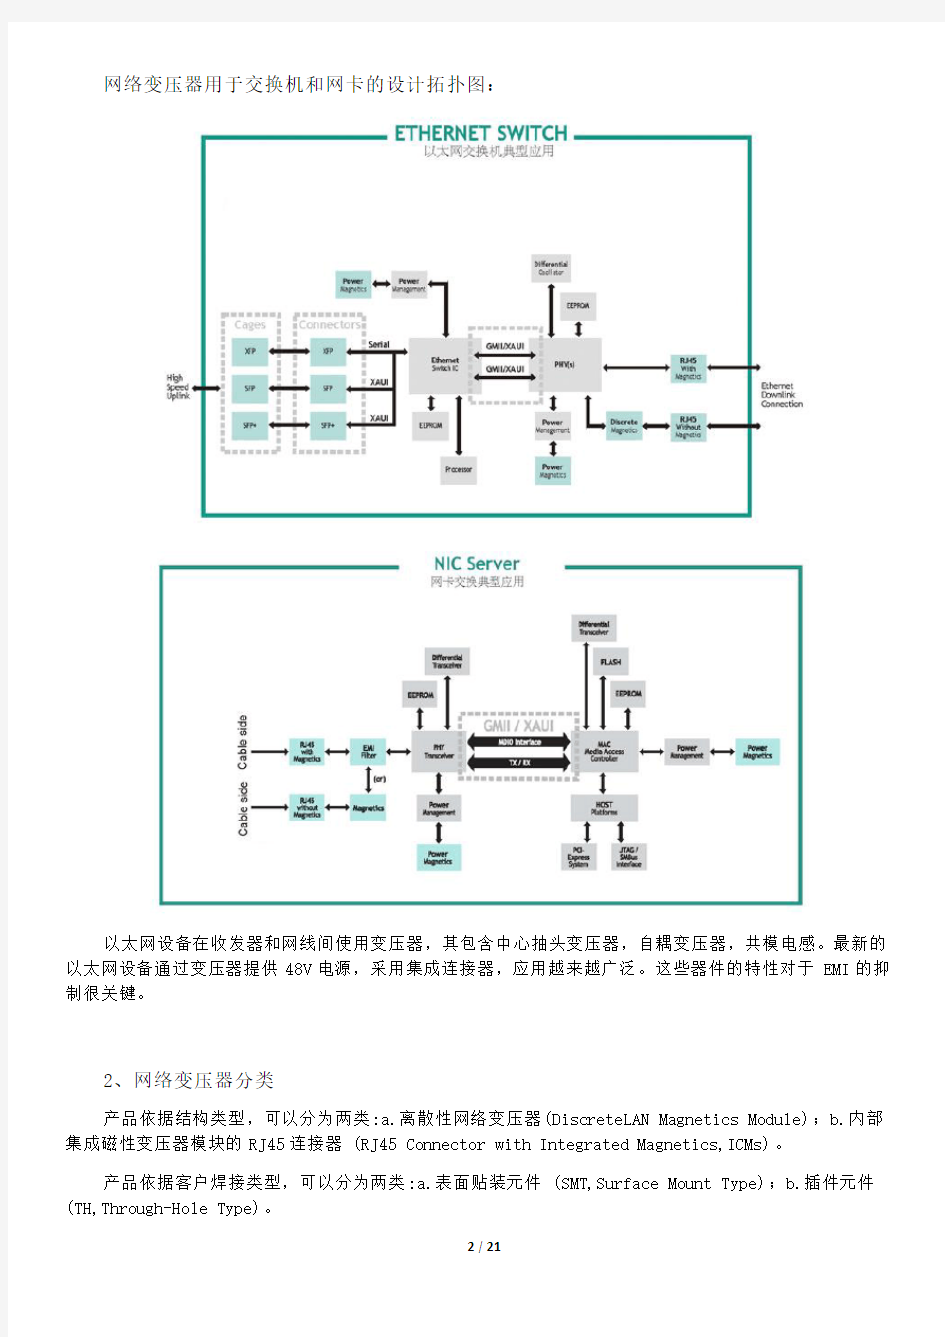 网络变压器的工作原理介绍和EMC设计